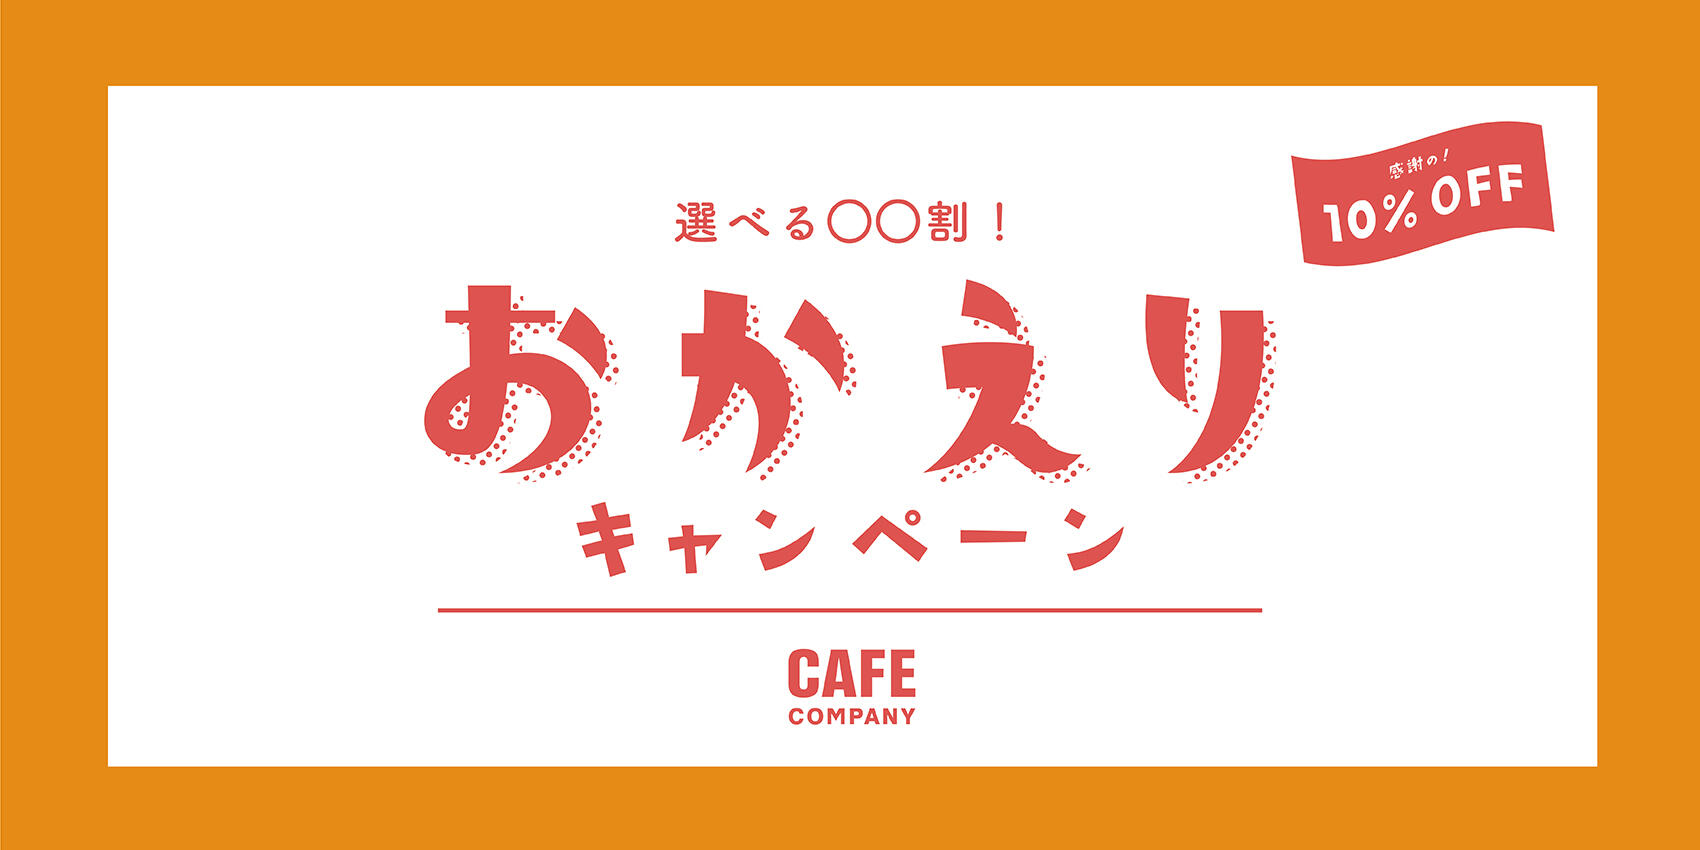 Cafe Company